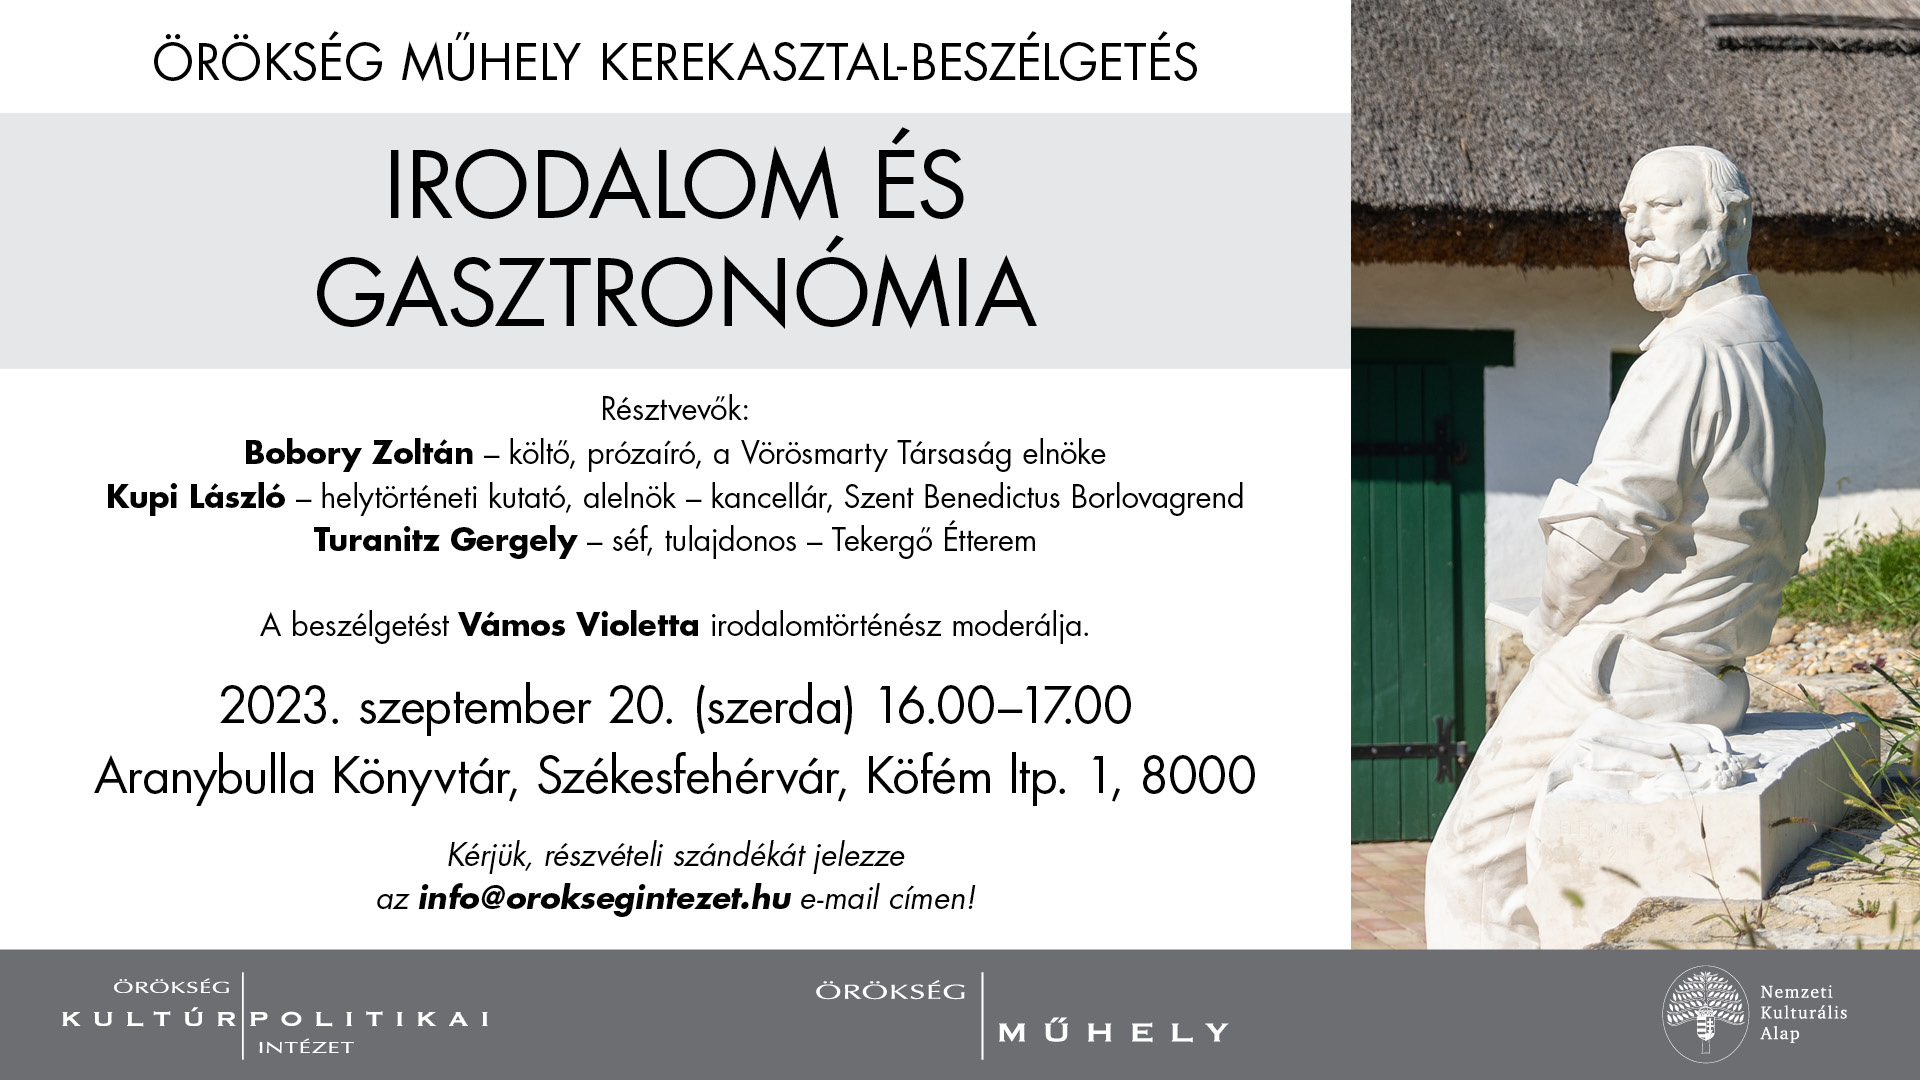 Irodalom és gasztronómia – Örökség Műhely kerekasztal-beszélgetés Vörösmartyról az Aranybulla Könyvtárban